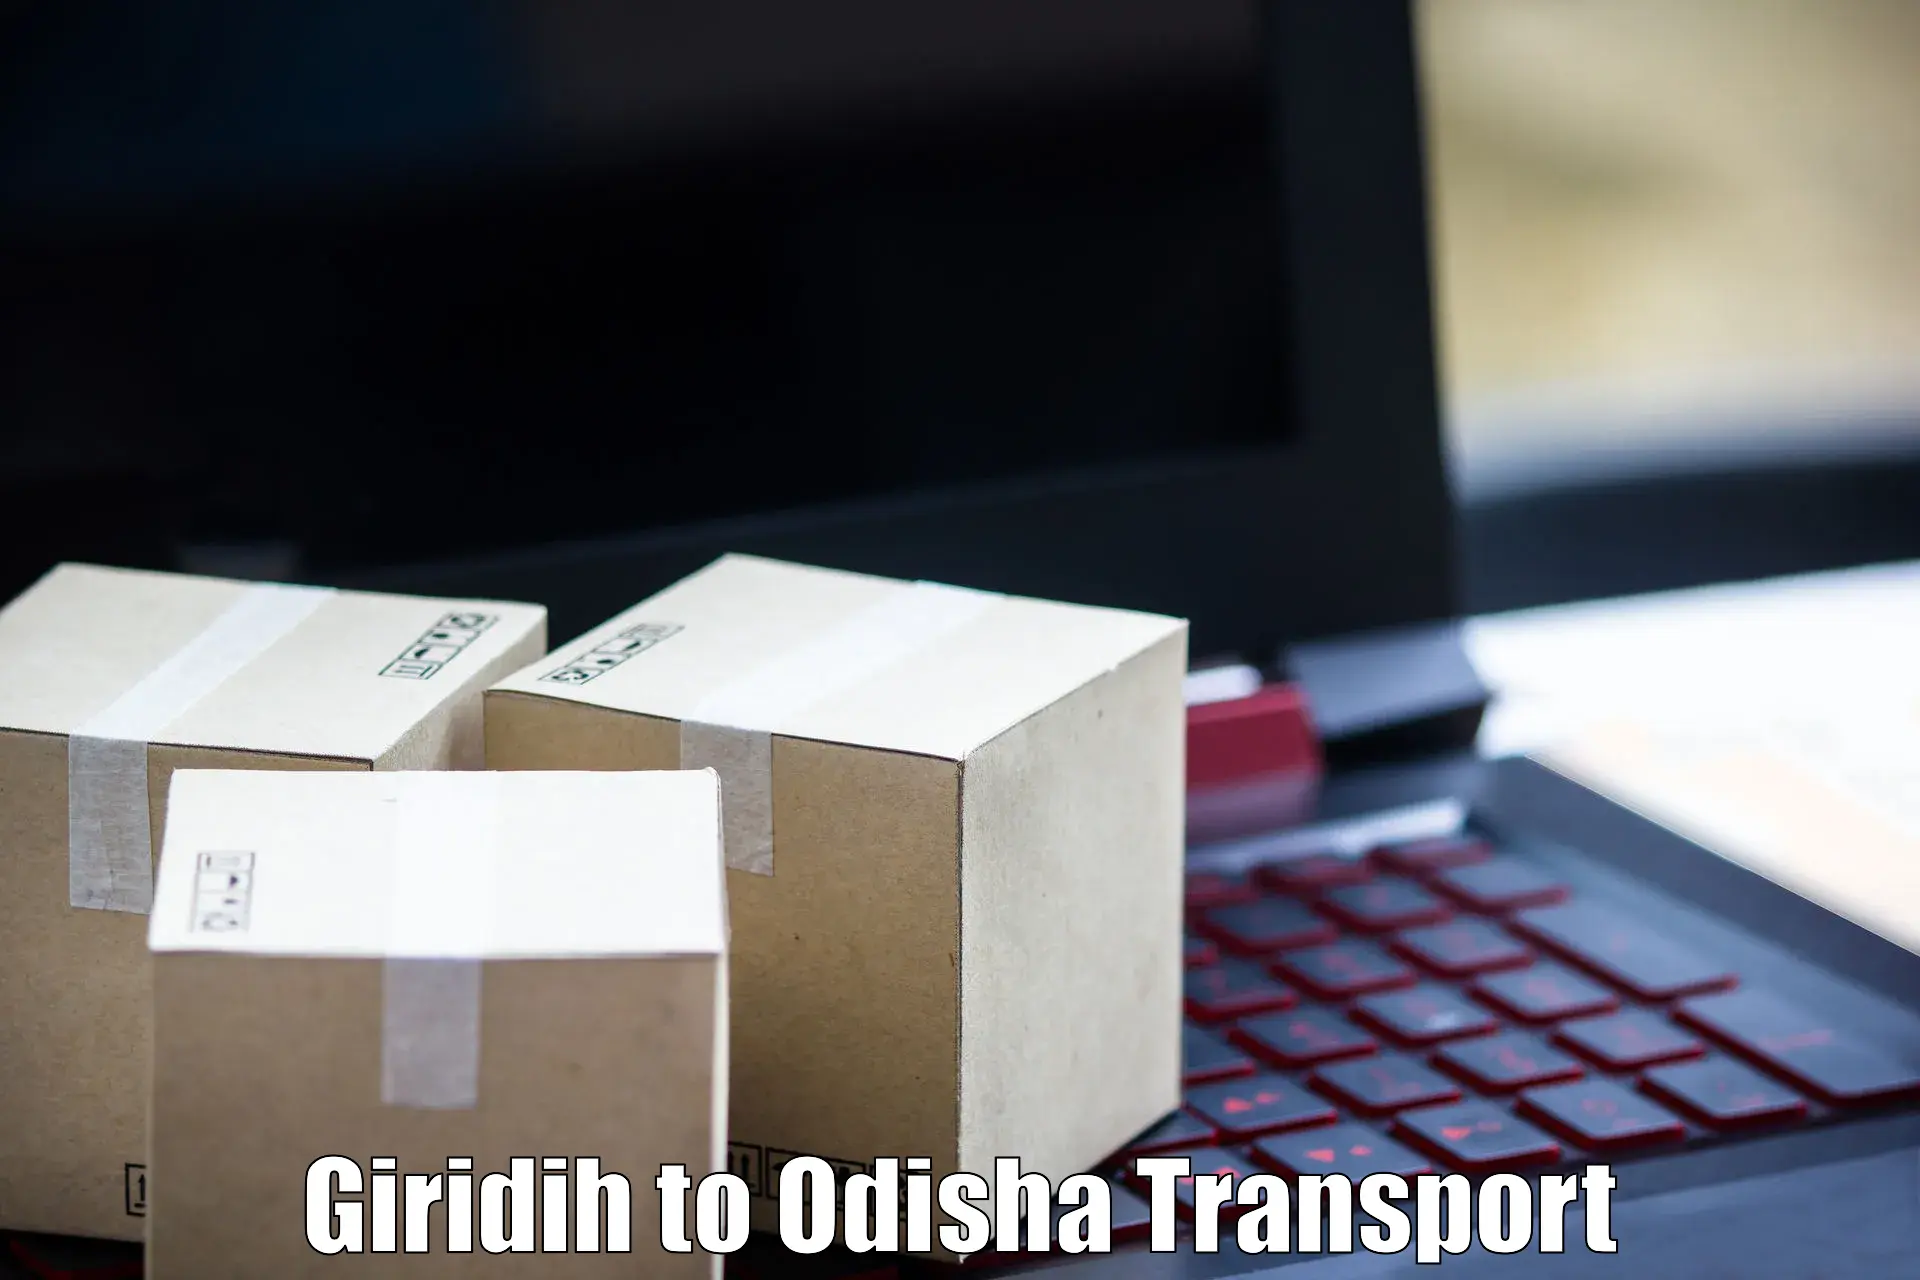 All India transport service Giridih to Paradip